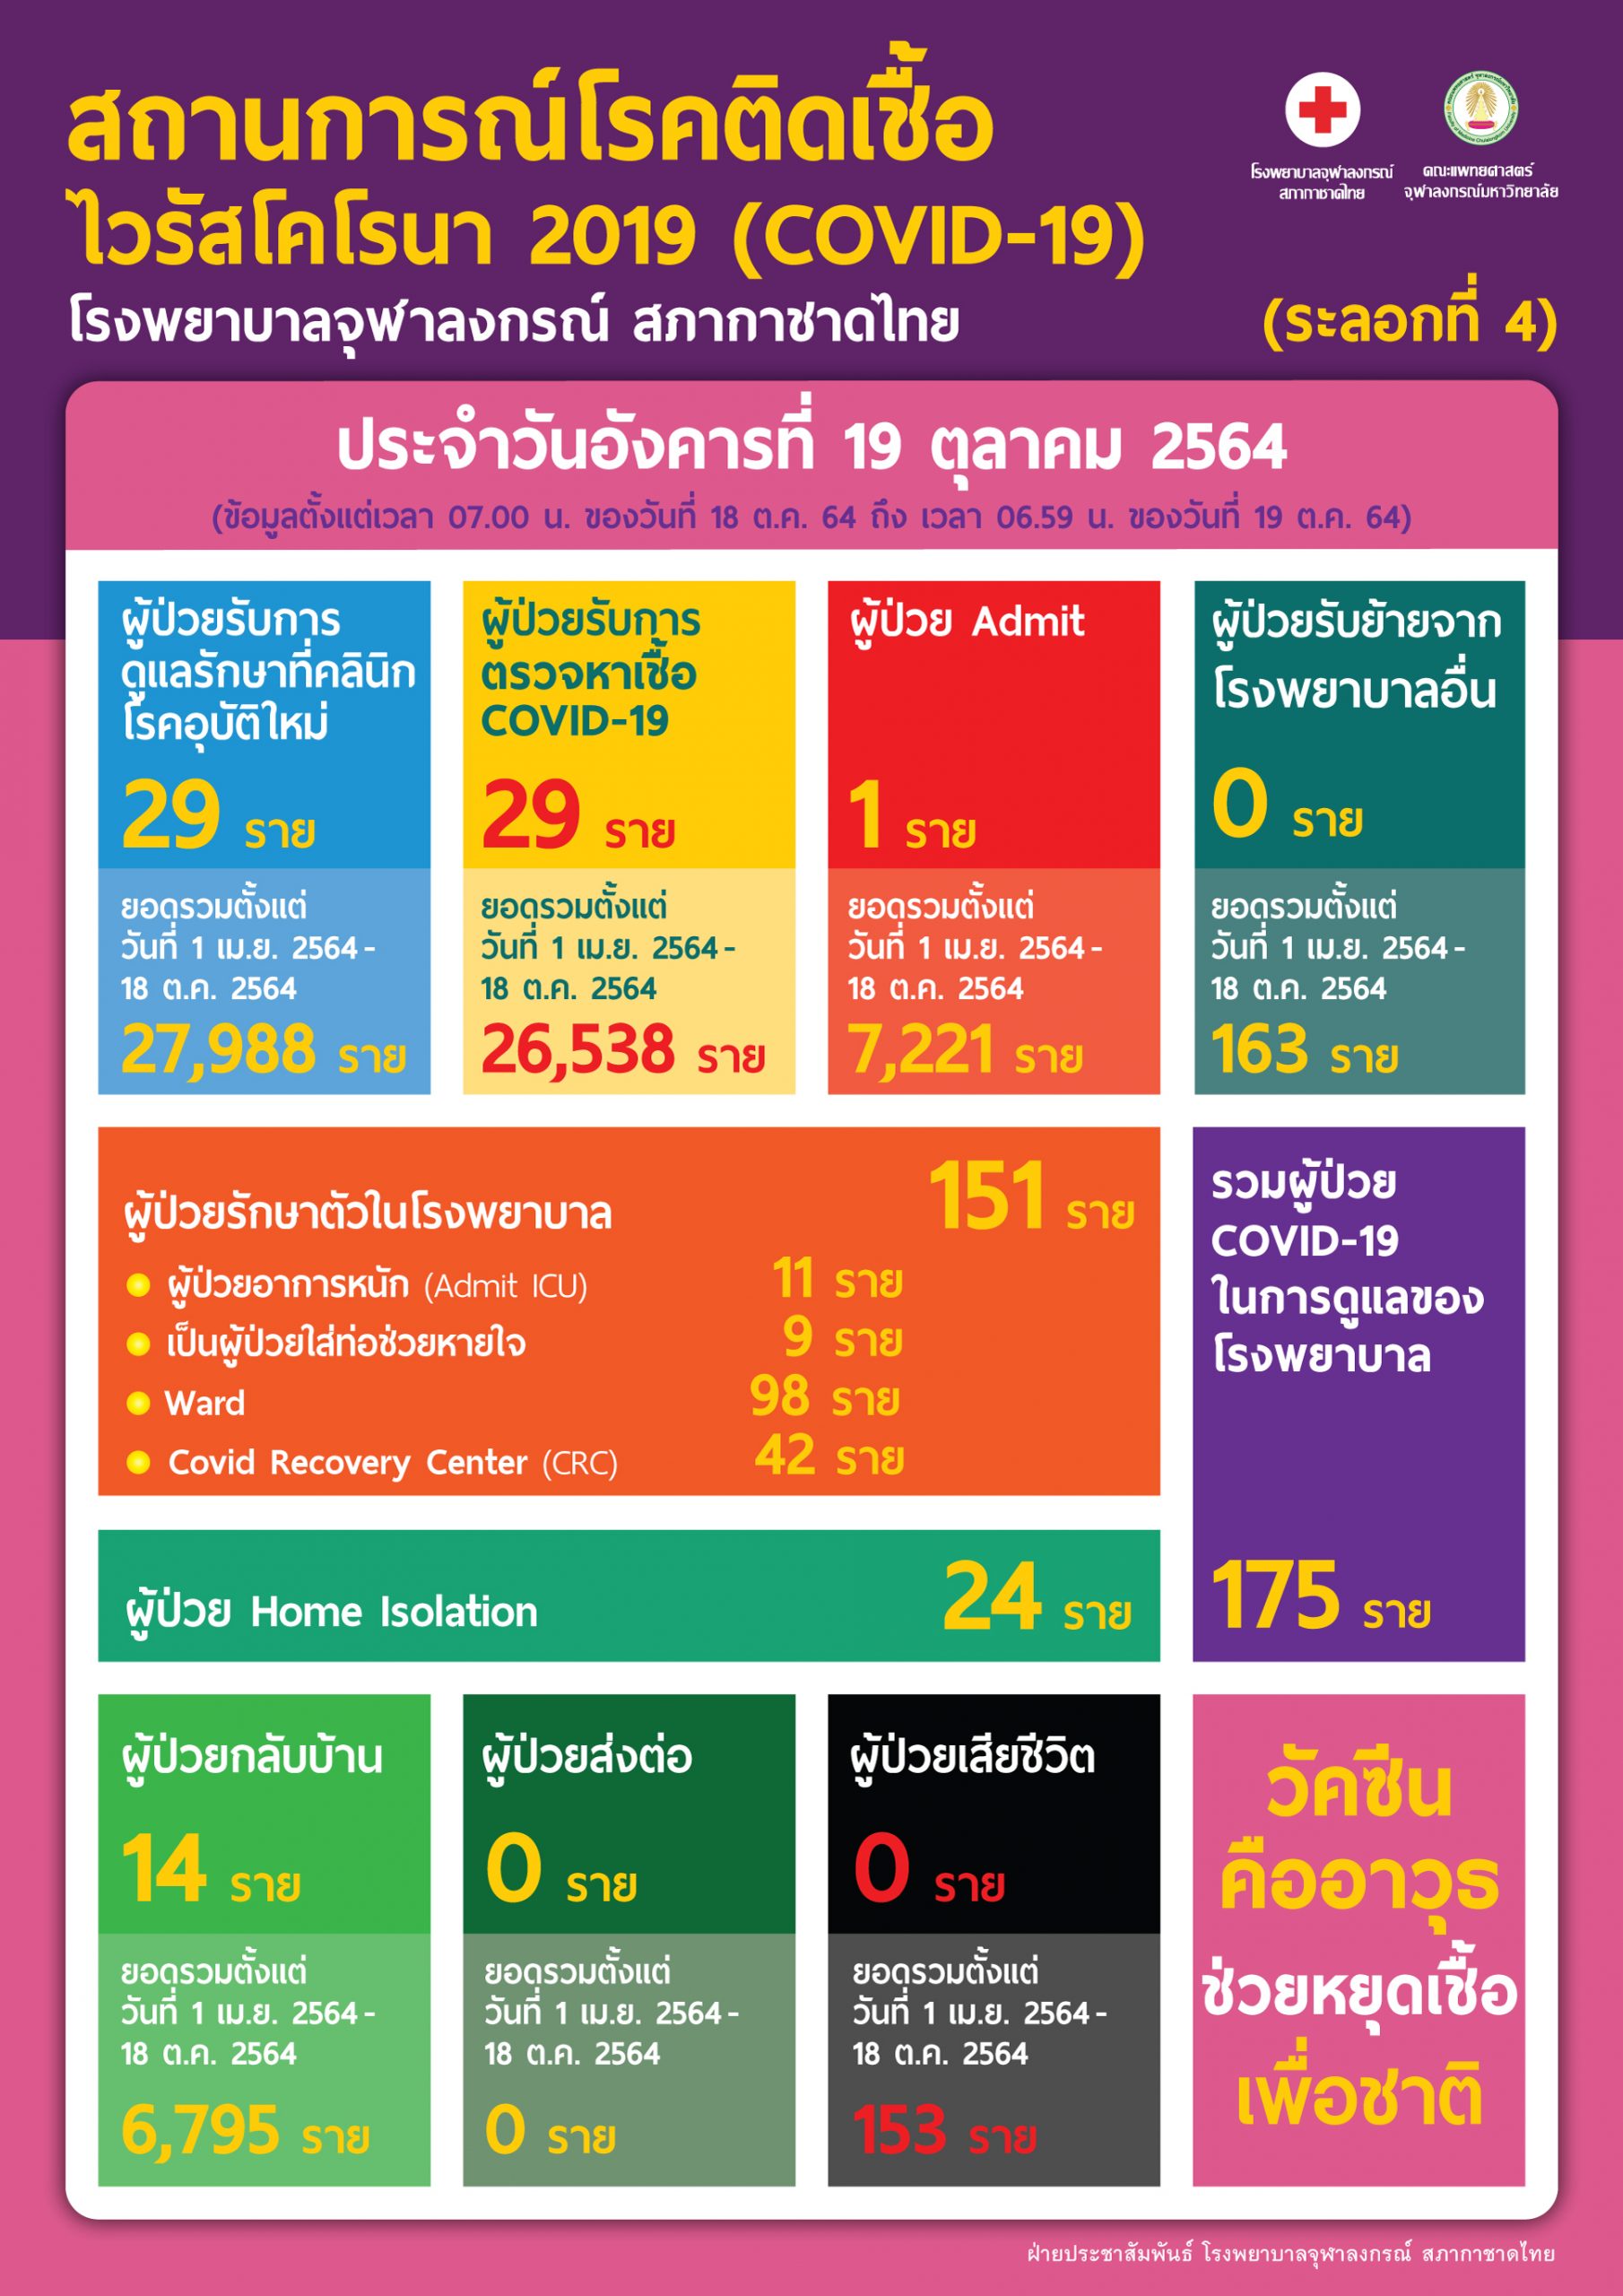 สถานการณ์โรคติดเชื้อไวรัสโคโรนา 2019 (COVID-19) (ระลอกที่ 4) โรงพยาบาลจุฬาลงกรณ์ สภากาชาดไทย ประจำวันอังคารที่ 19 ตุลาคม 2564